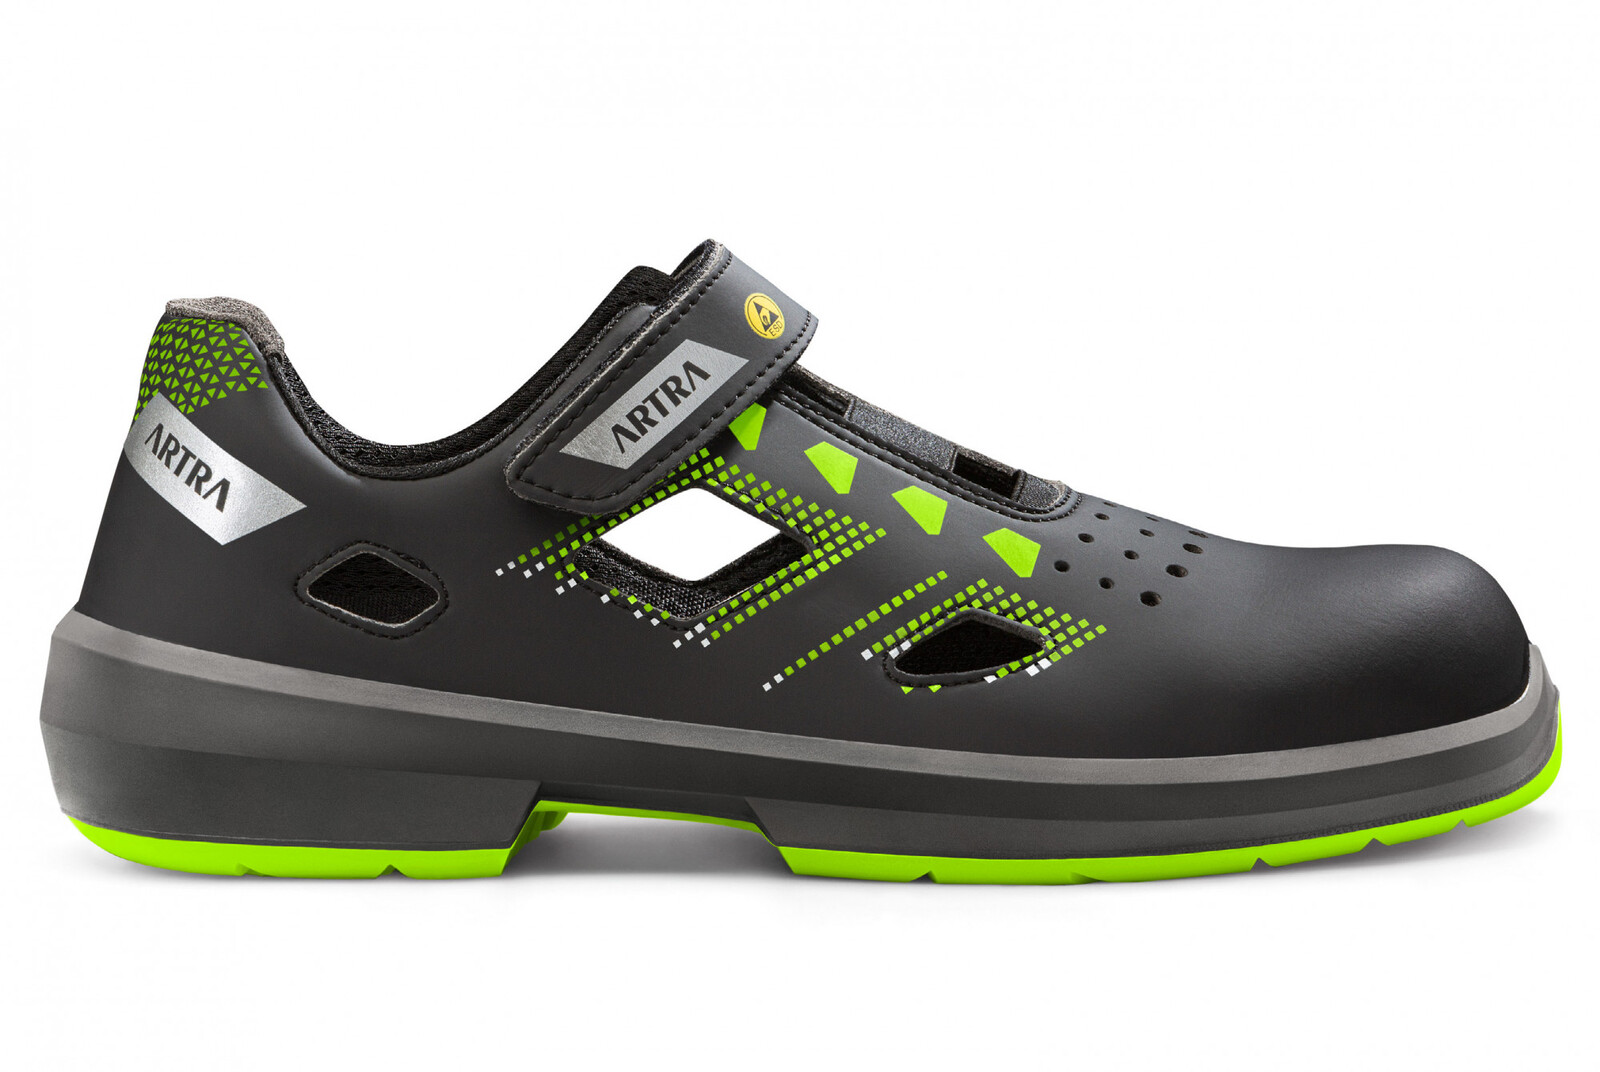 Bezpečnostné sandále Artra Arzo 805 678080 S1 SRC ESD MF - veľkosť: 44, farba: čierna/zelená